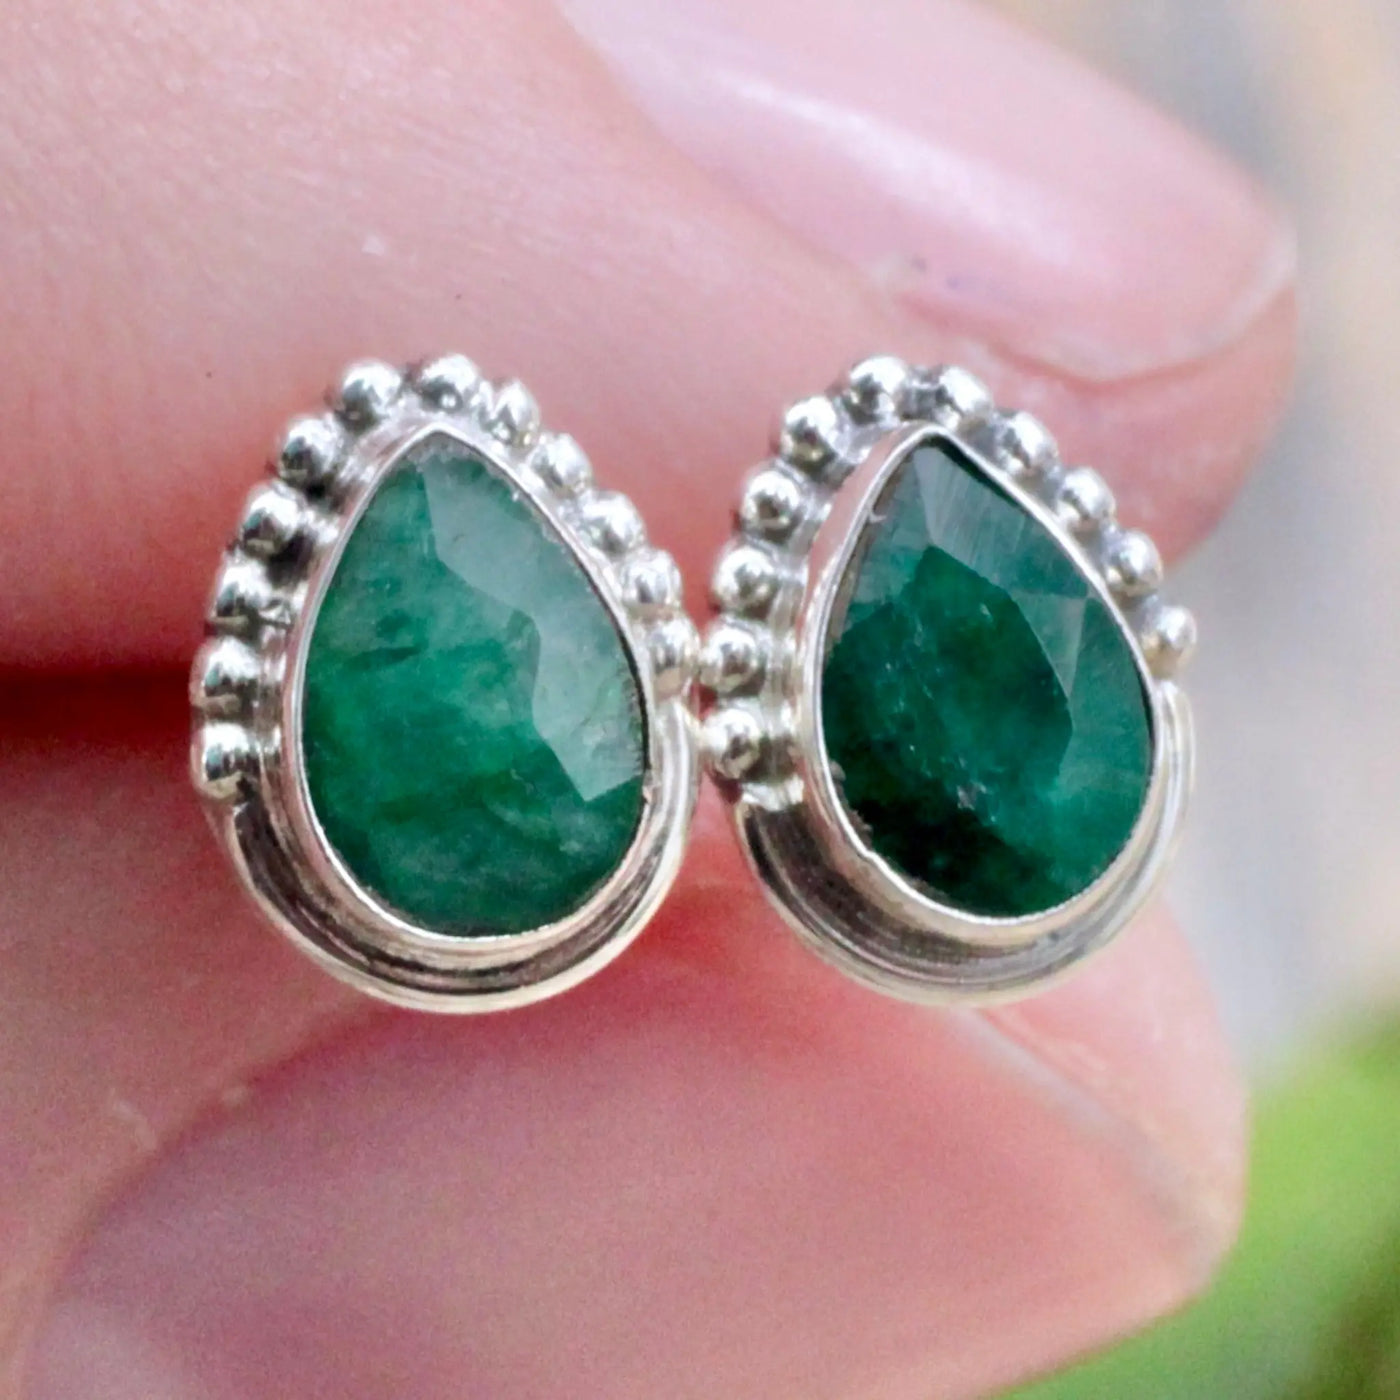 Emerald Stud Earrings with Silverwork in Sterling Silver